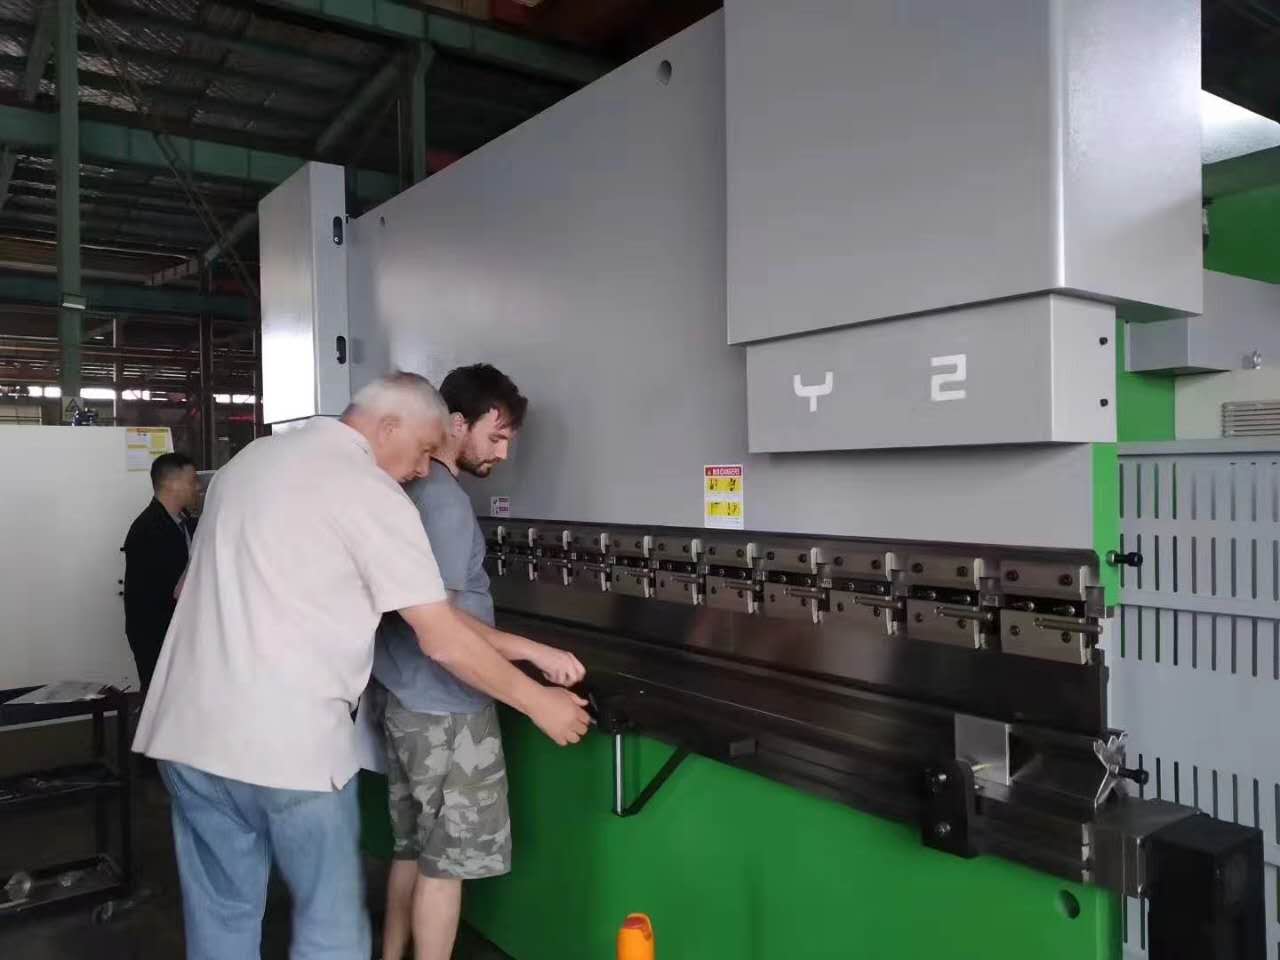 63 Ton Metal Sheet Steel Bending Machine Cnc Hydraulic Press Brake For Metal Working